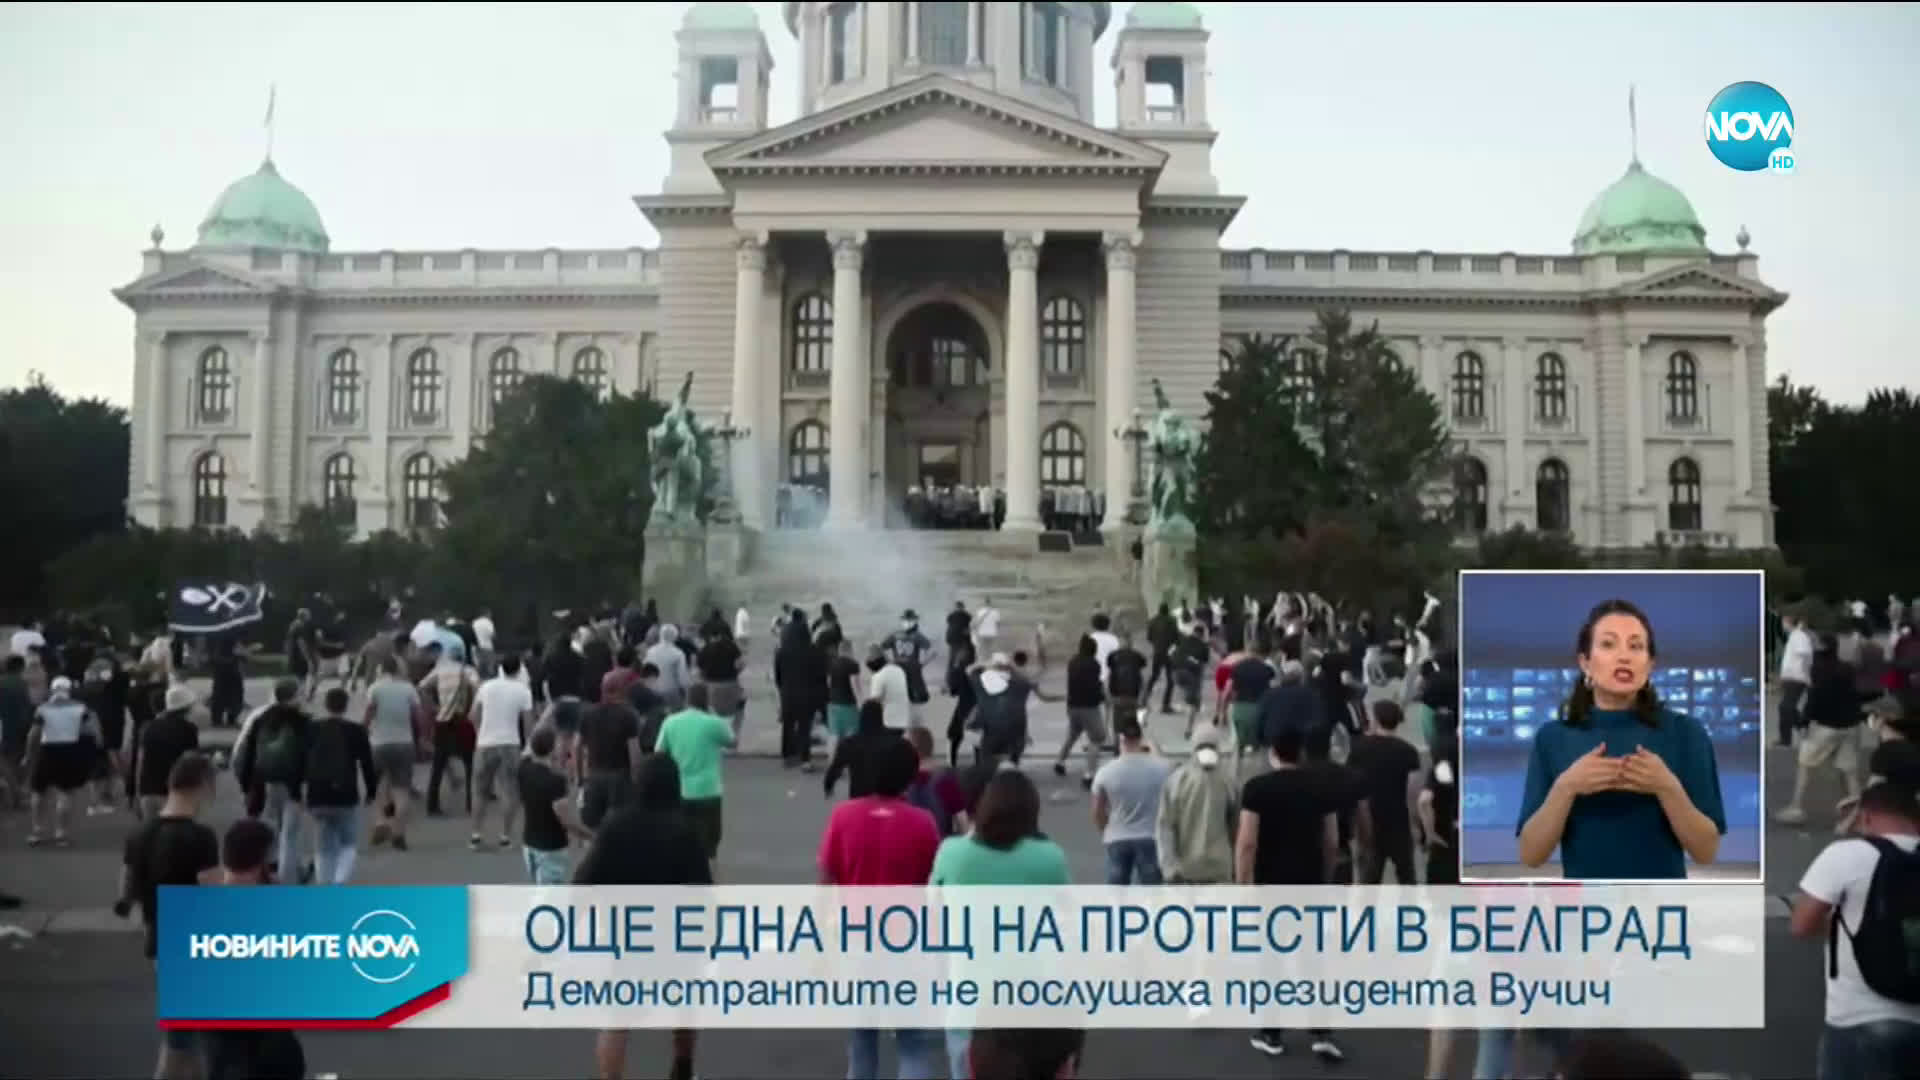 ВТОРА НОЩ ПРОТЕСТИ В СЪРБИЯ: Полицията в Белград използва сълзотворен газ